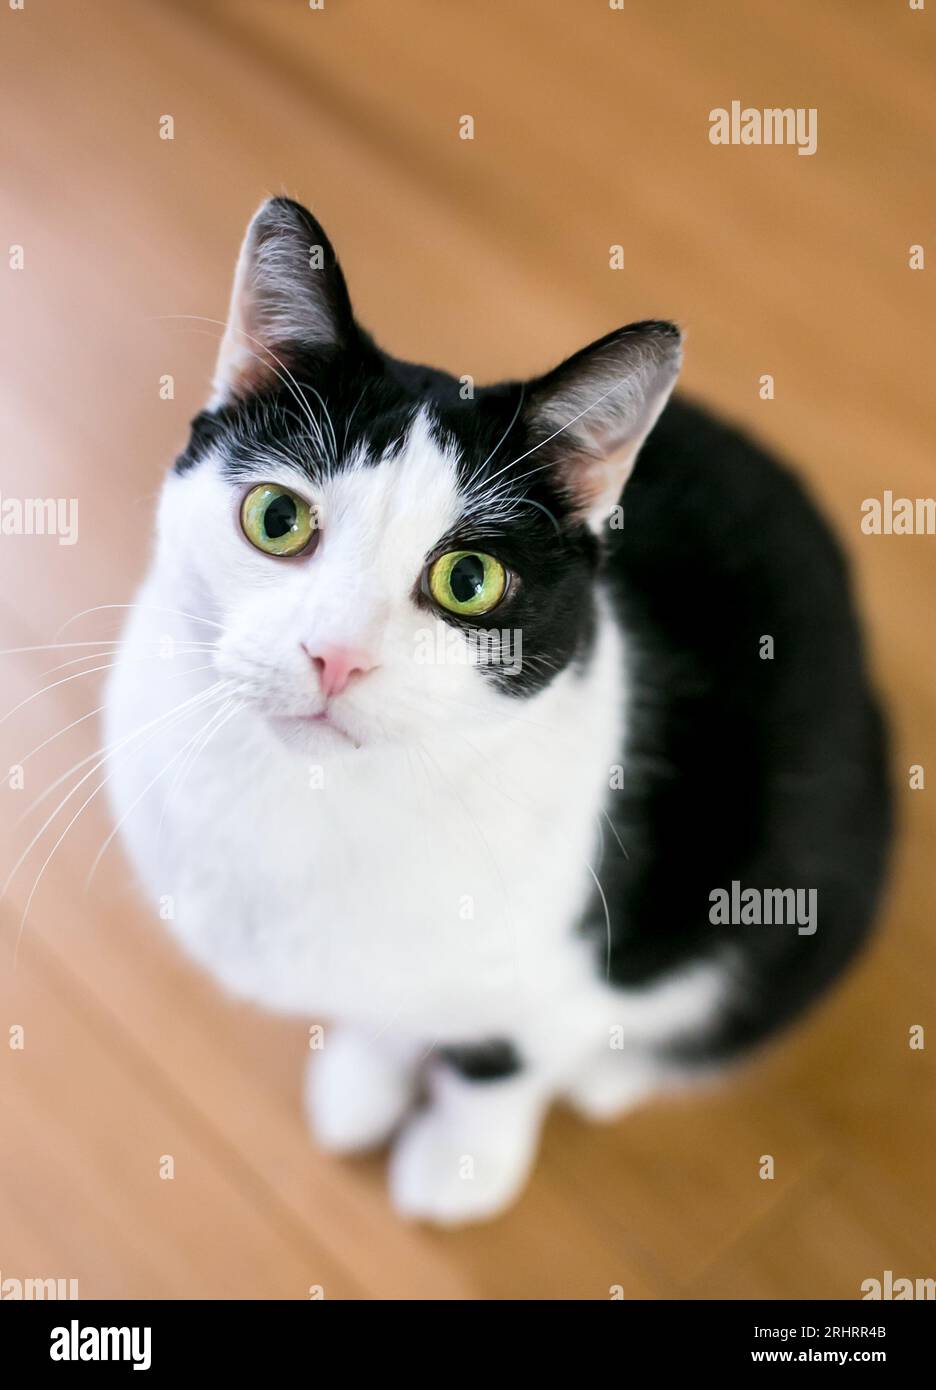 Un chat noir et blanc court avec les yeux verts assis et regardant vers le haut la caméra Banque D'Images